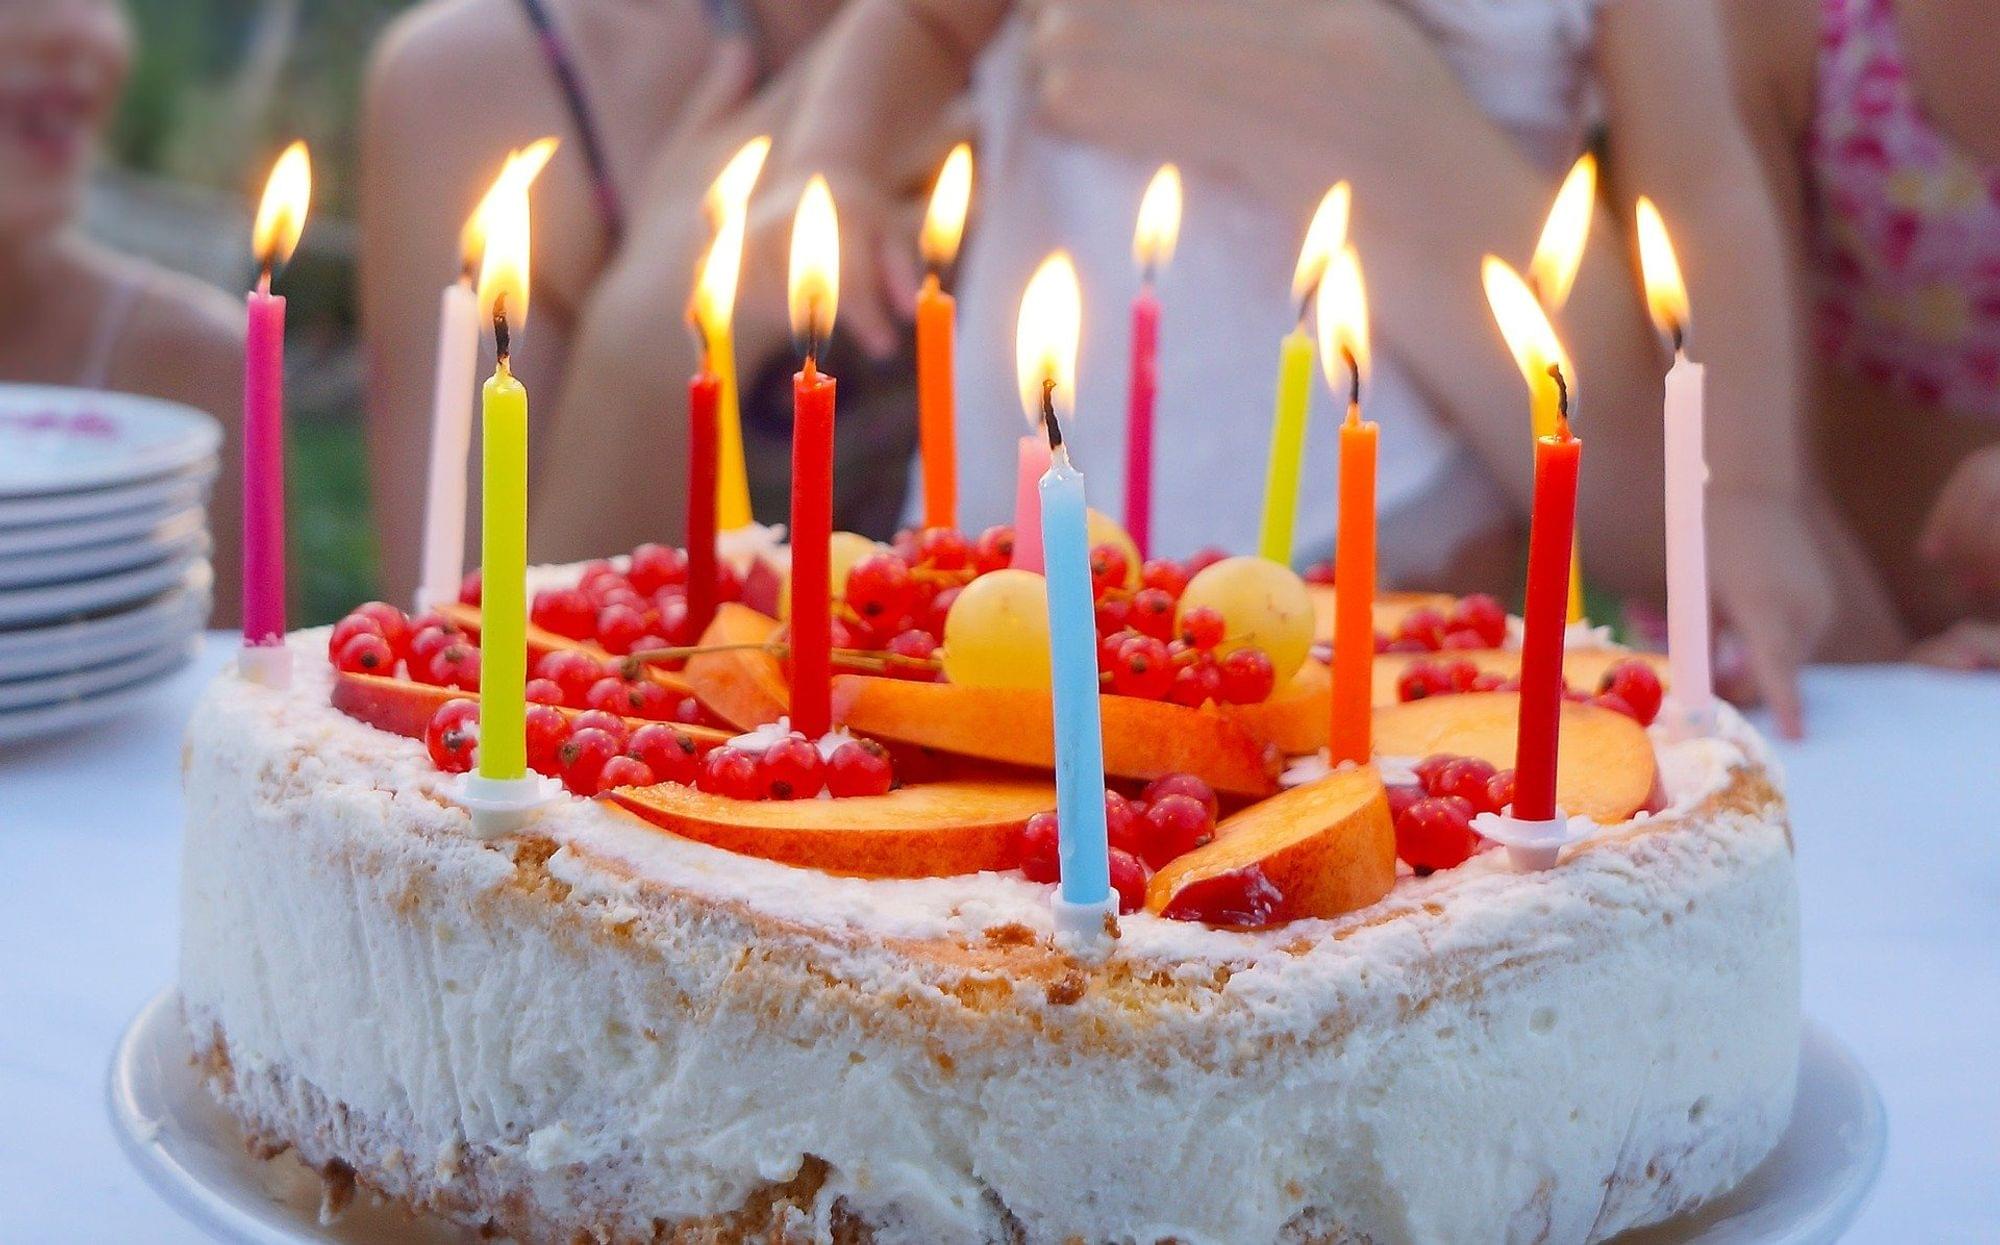 Un gâteau d'anniversaire